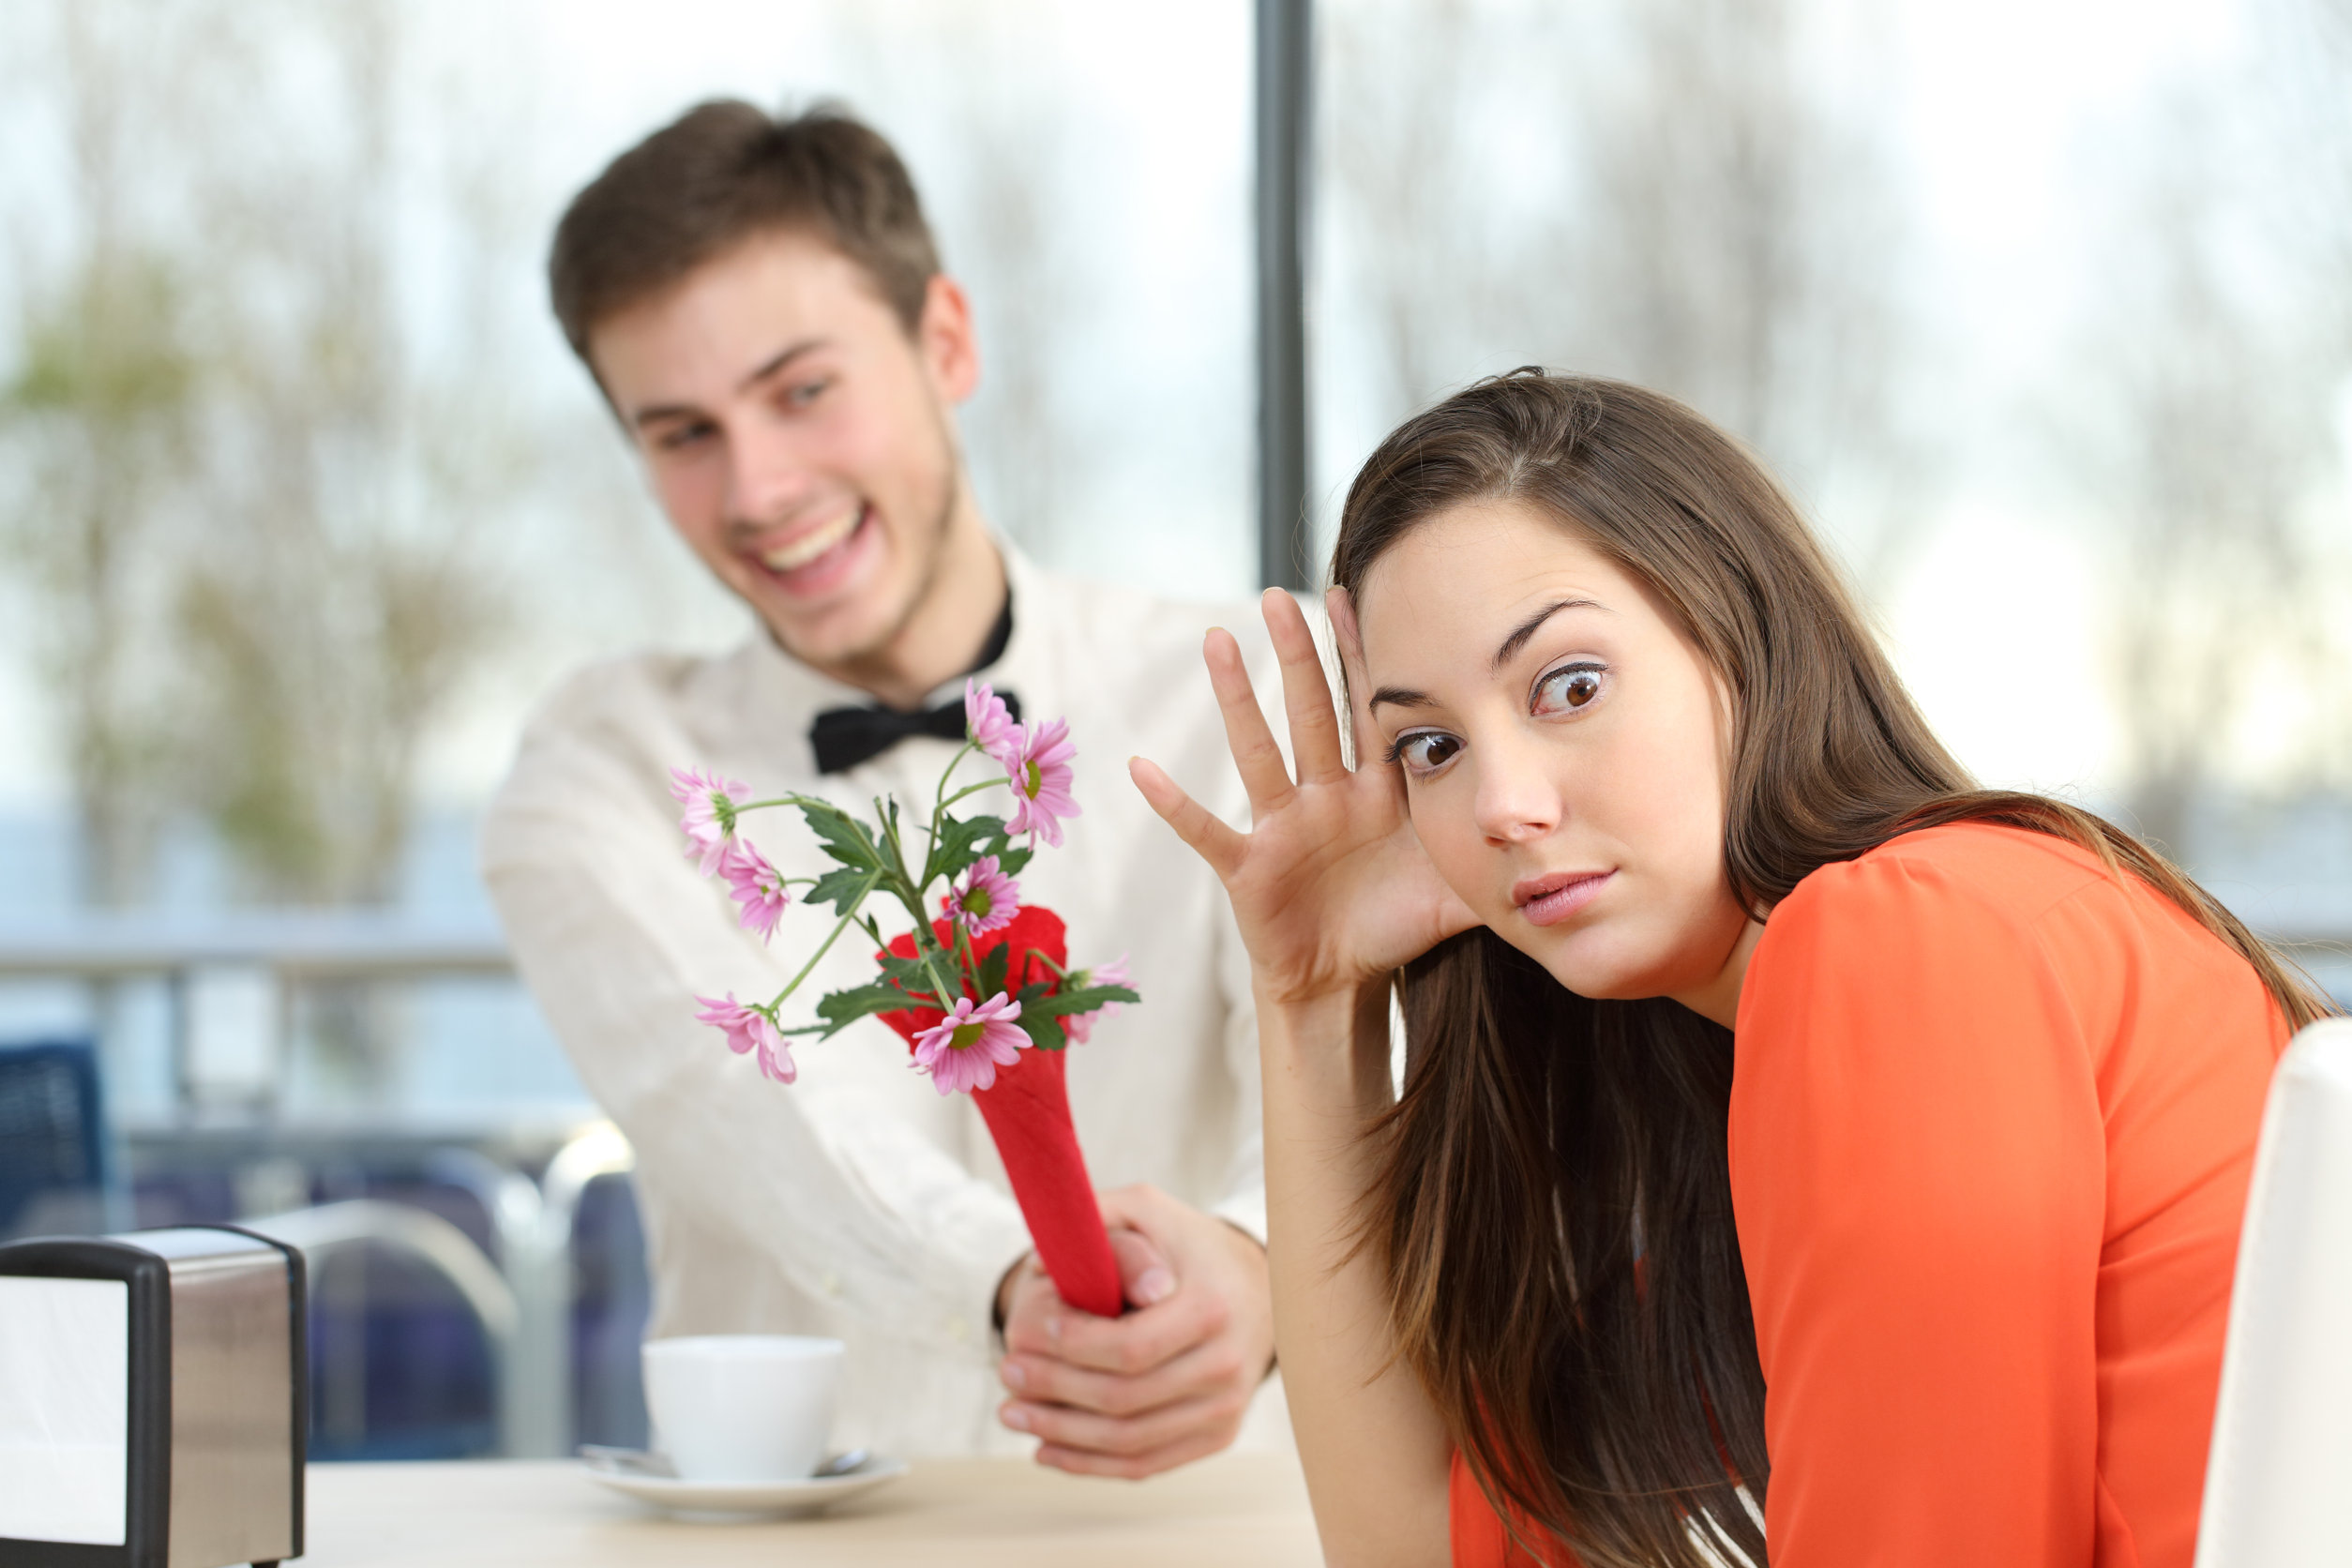 Poll: Wat vind jij grote afknappers op een eerste date? 33